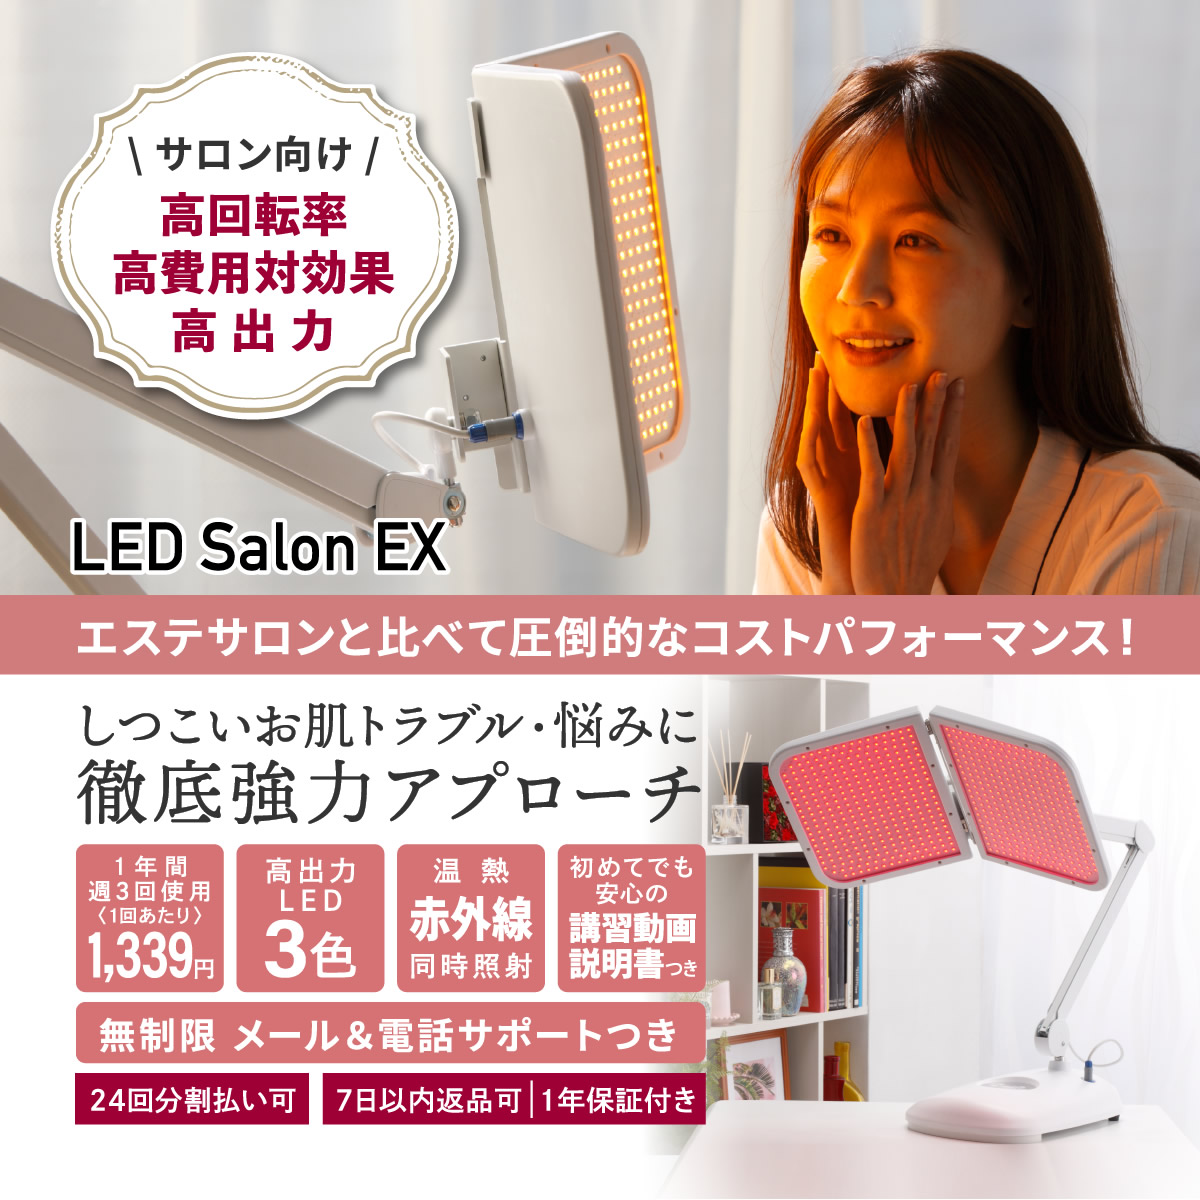 LED Salon EXはエステサロンと比べて圧倒的なコストパフォーマンス！しつこいお肌トラブル・悩みに徹底強力アプローチ